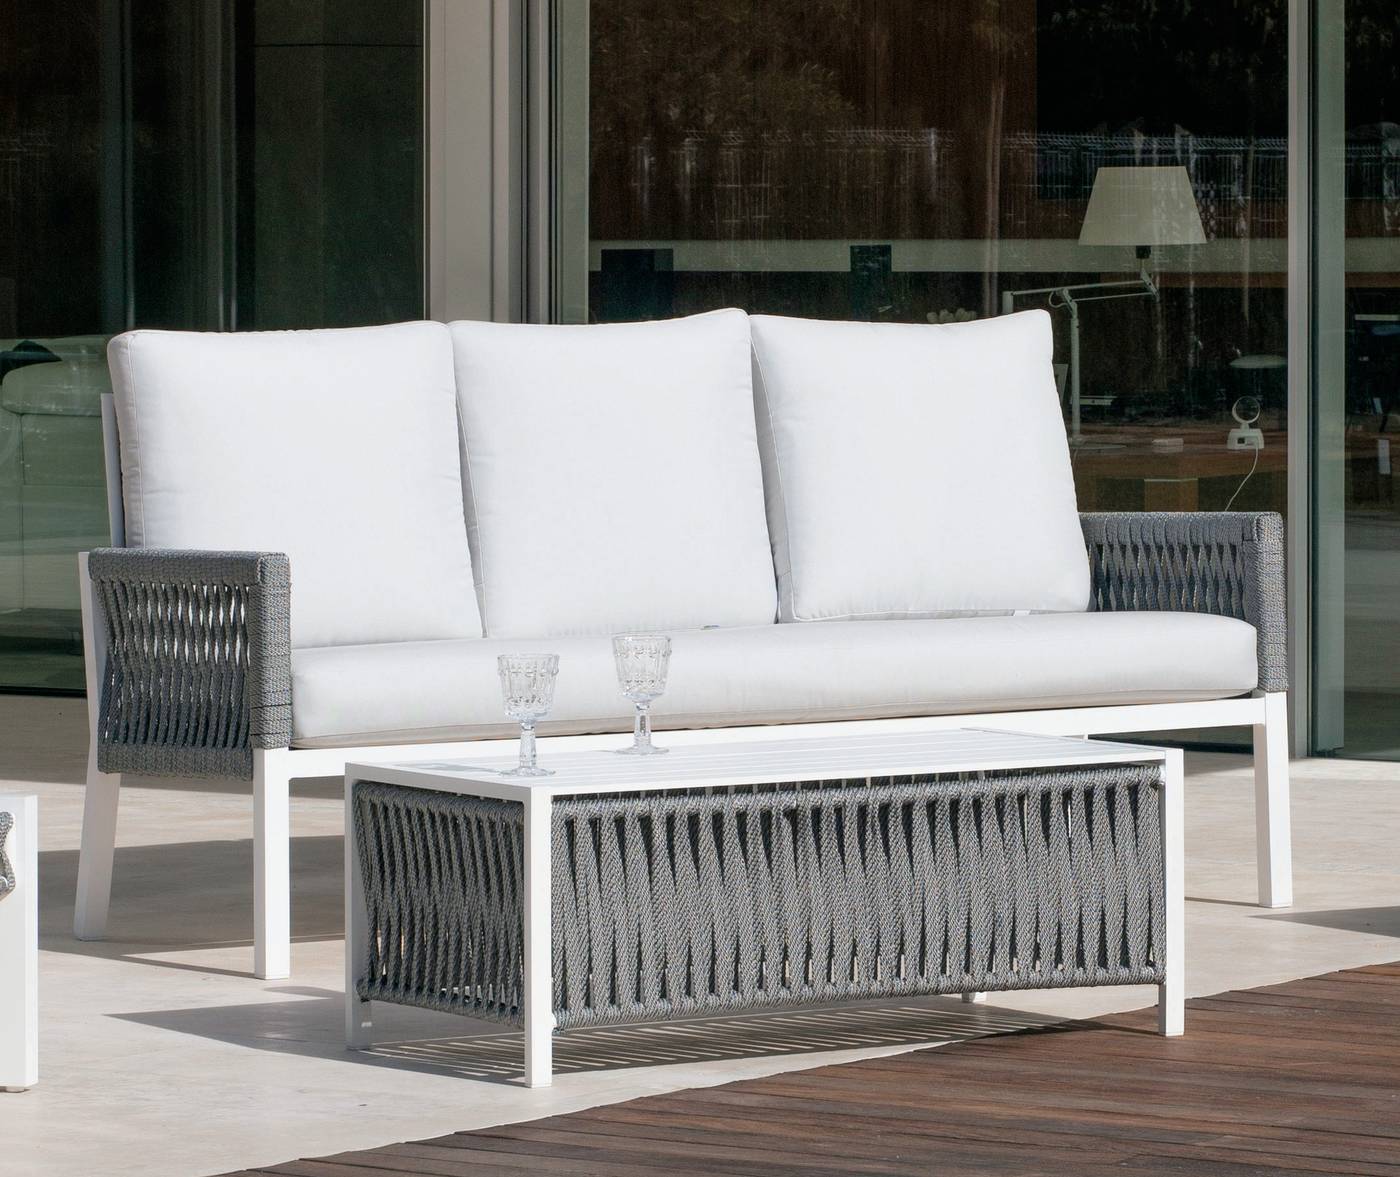 Sofá relax 3 plazas lujo, con cojines desenfundables. Fabricado de aluminio y cuerda en color blanco, gris, marrón o champagne.